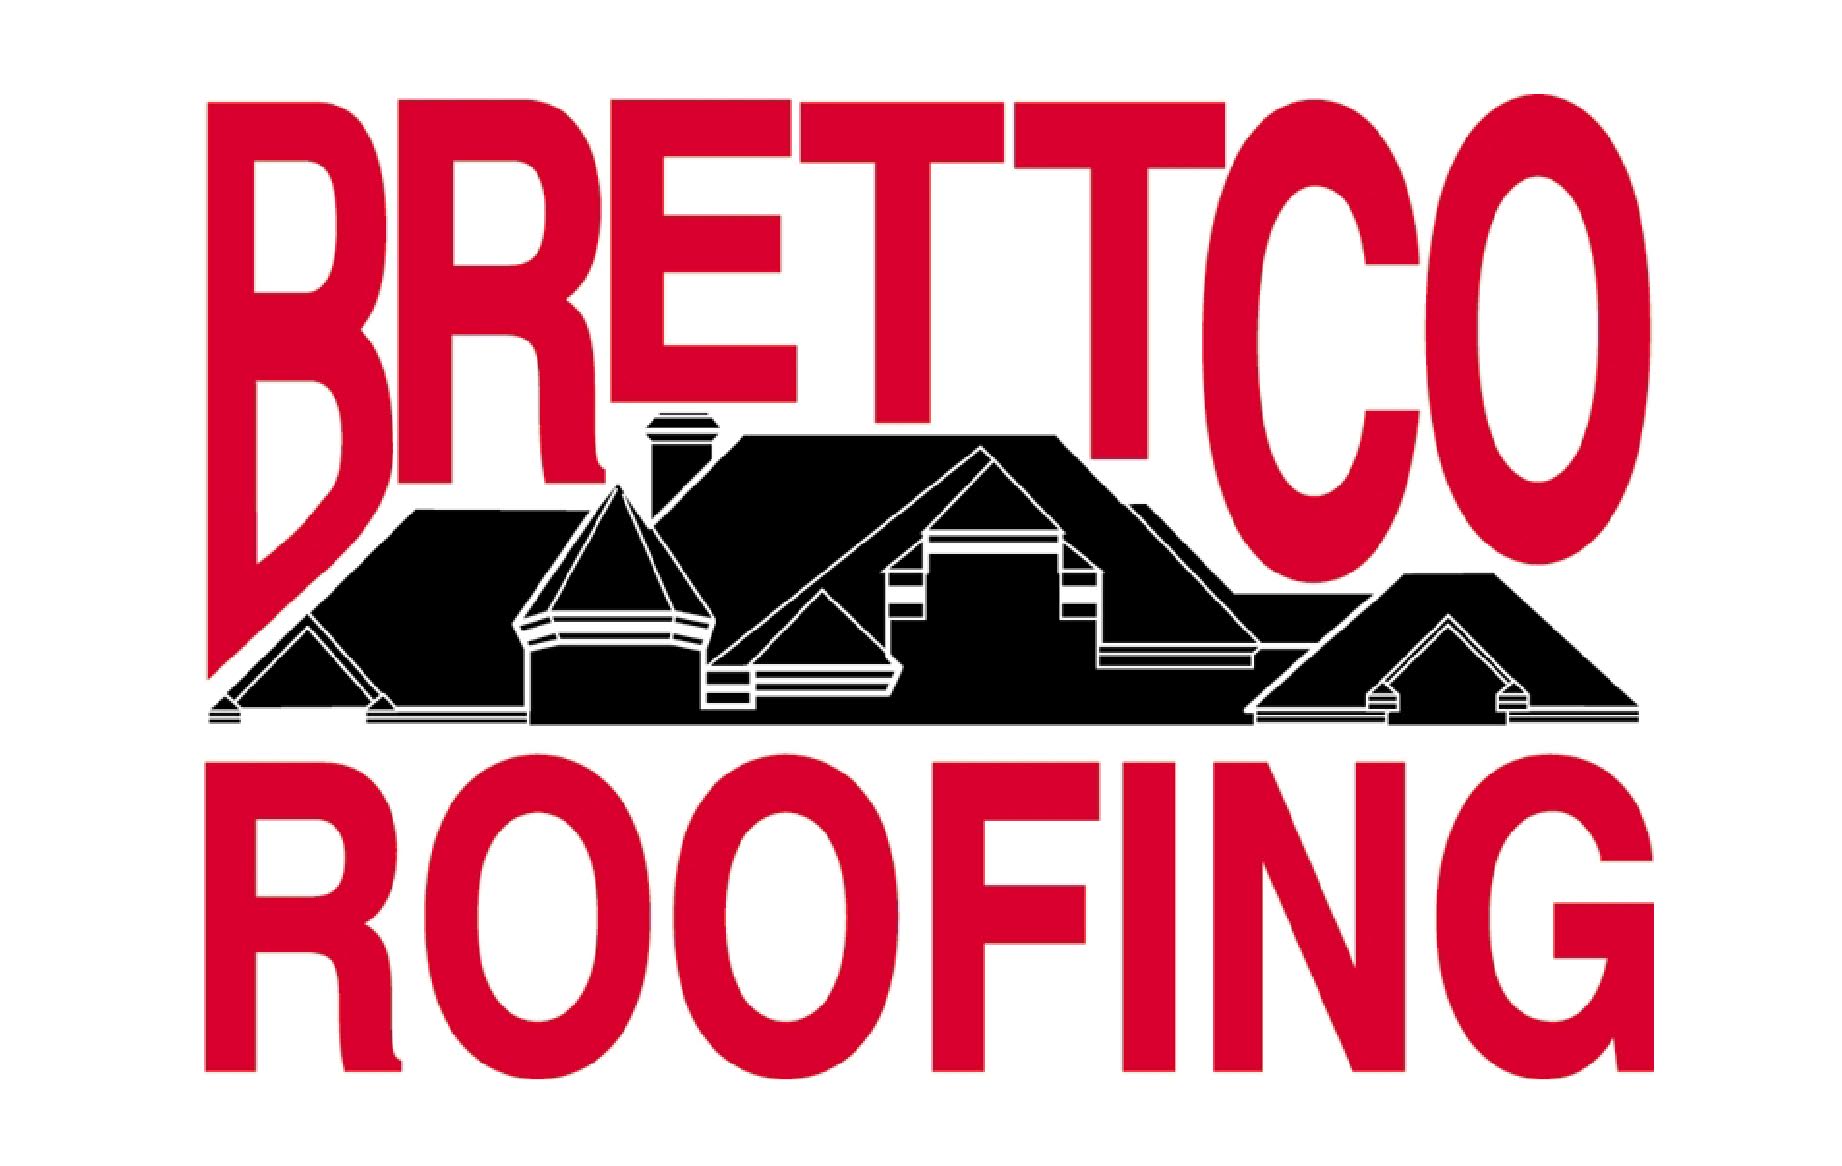 Brettco Roofing II, LLC